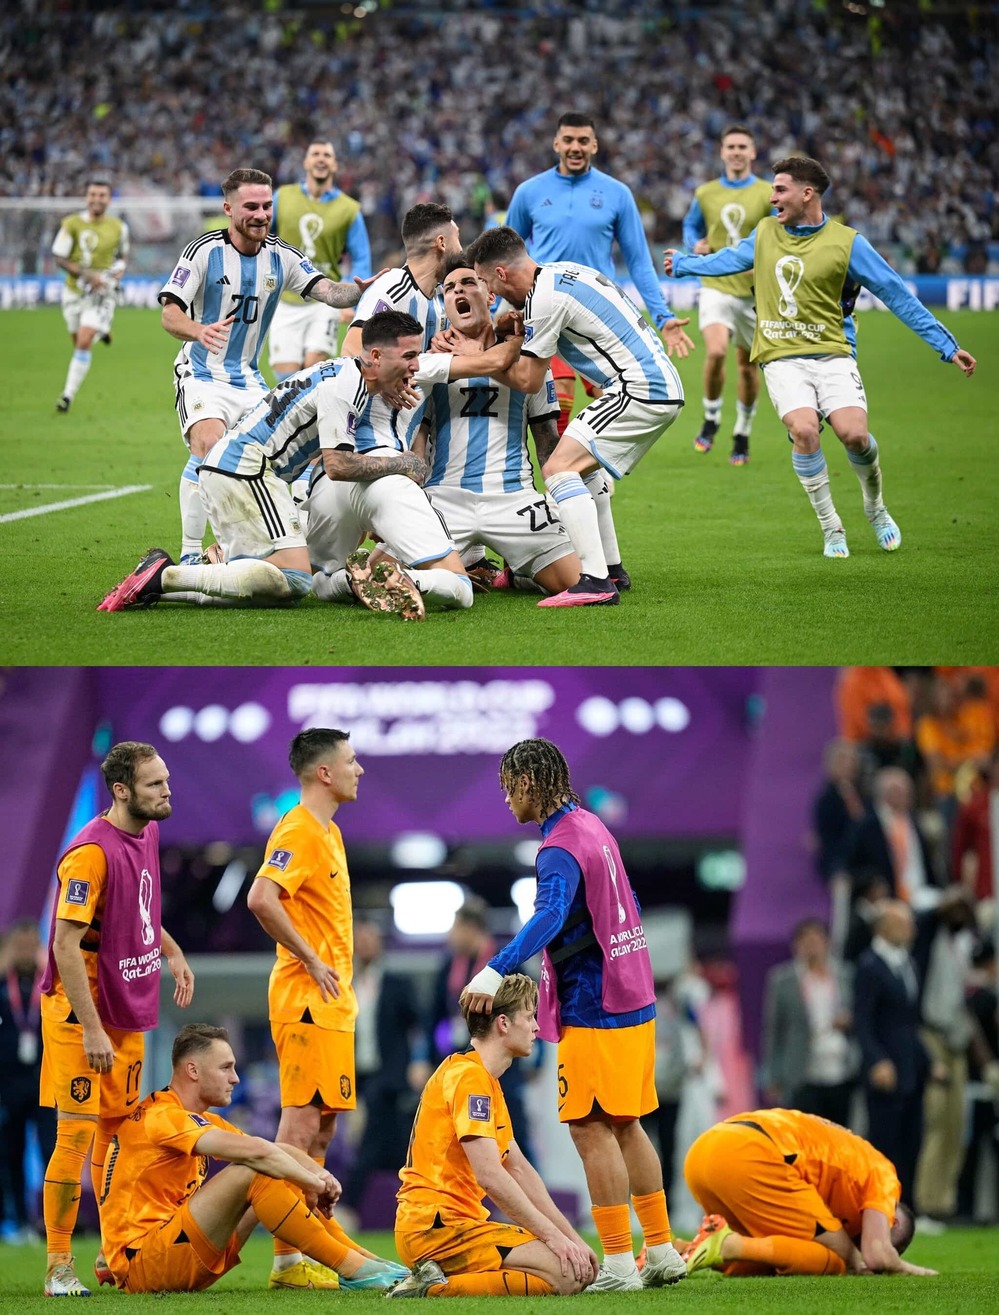 FIFA đã trao cho Messi và đội tuyển Argentina ngôi á quân tại World Cup. Hãy xem lại những khoảnh khắc đầy cảm xúc trong trận đấu bán kết, và cùng chia sẻ tinh thần chiến đấu mạnh mẽ của Messi và đồng đội của anh ấy.